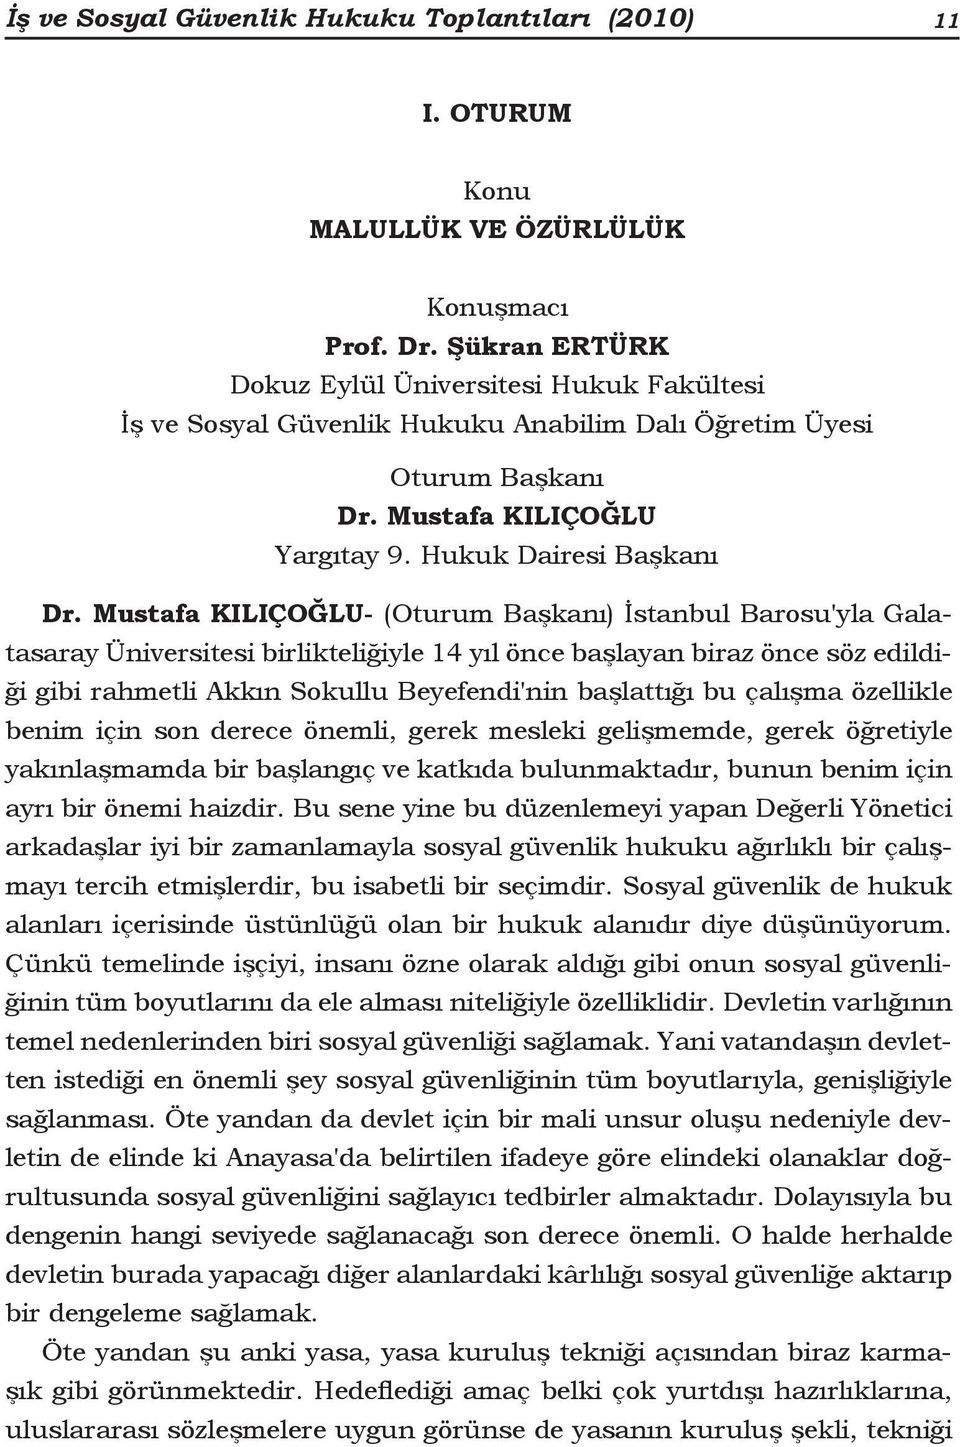 Mustafa KILIÇOĞLU- (Oturum Başkanı) İstanbul Barosu'yla Galatasaray Üniversitesi birlikteliğiyle 14 yıl önce başlayan biraz önce söz edildiği gibi rahmetli Akkın Sokullu Beyefendi'nin başlattığı bu